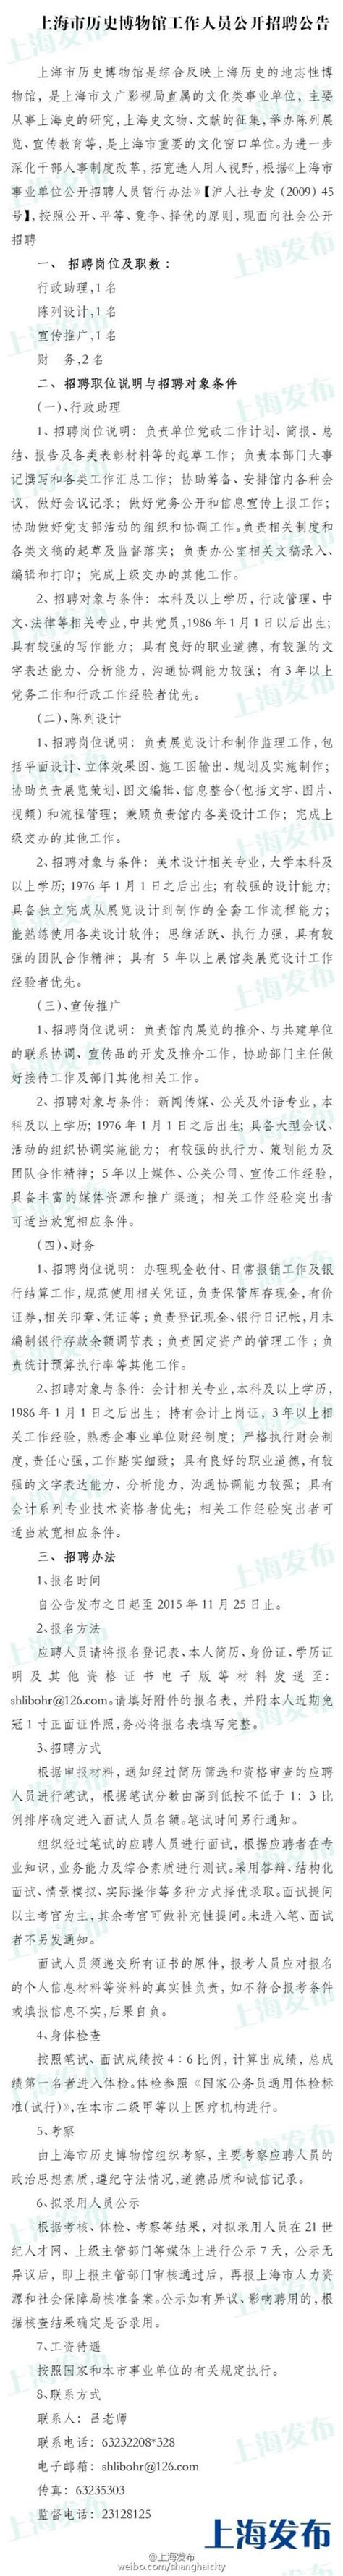 上海三家博物馆招聘22名工作人员 低调奢华超有范儿- 上海本地宝